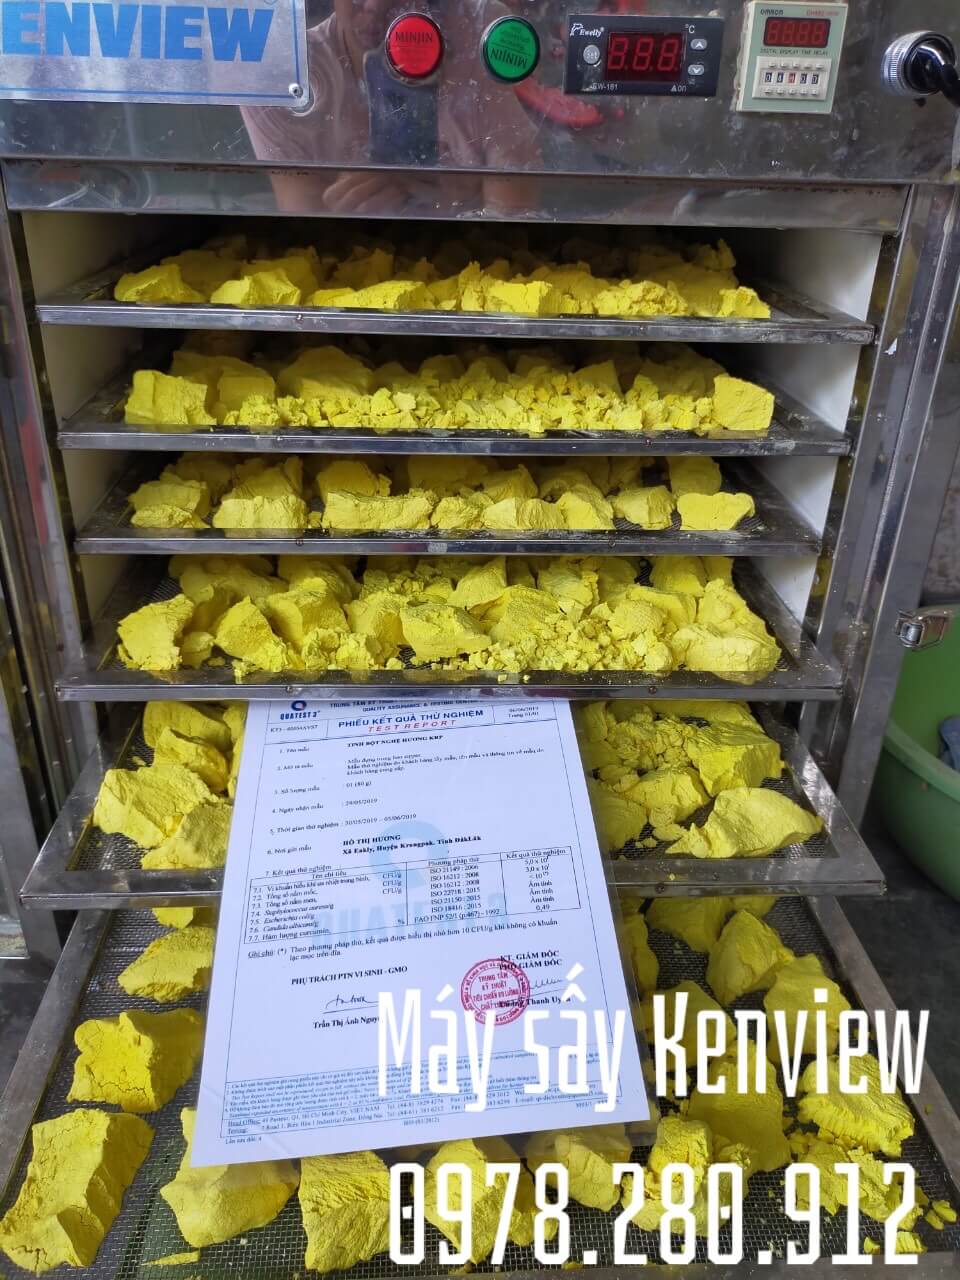 Máy sấy hoa quả Kenview tại Khánh Hòa.